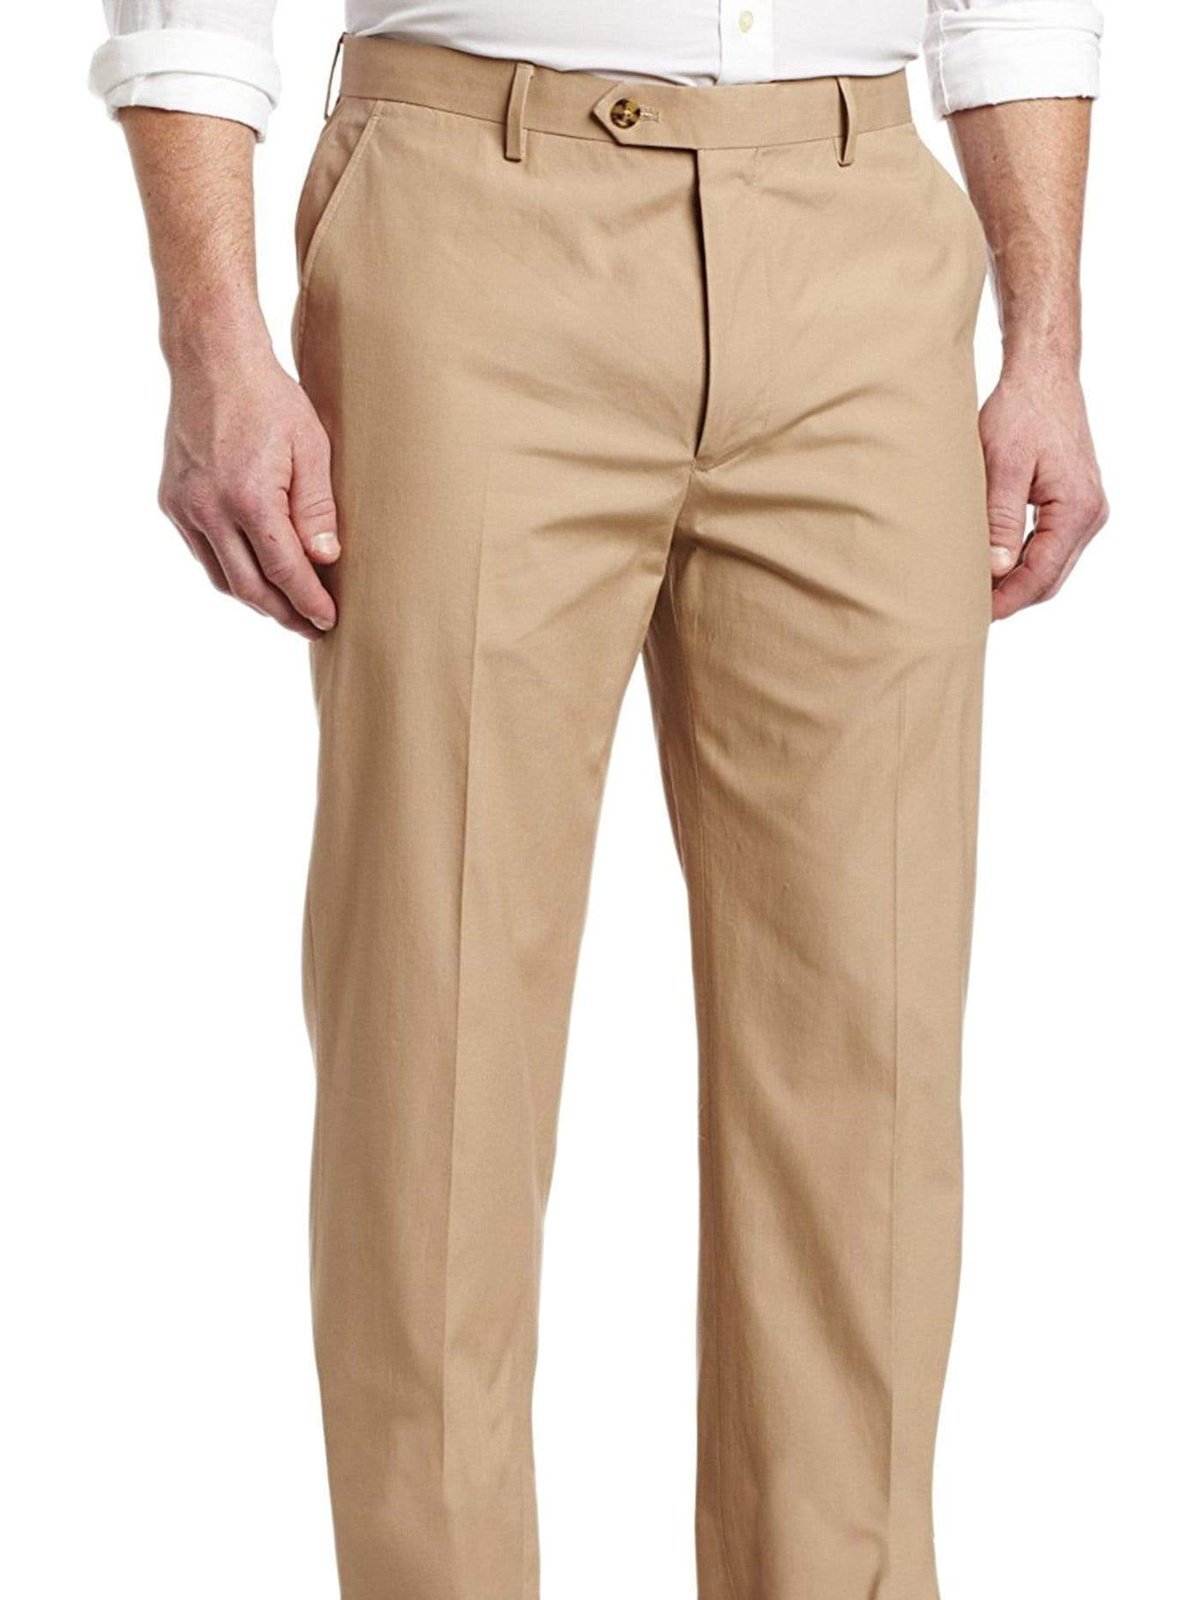 Tommy Hilfiger Trim Fit Solid Beige Flat Front Cotton Khakis Casual Pants - The Suit Depot